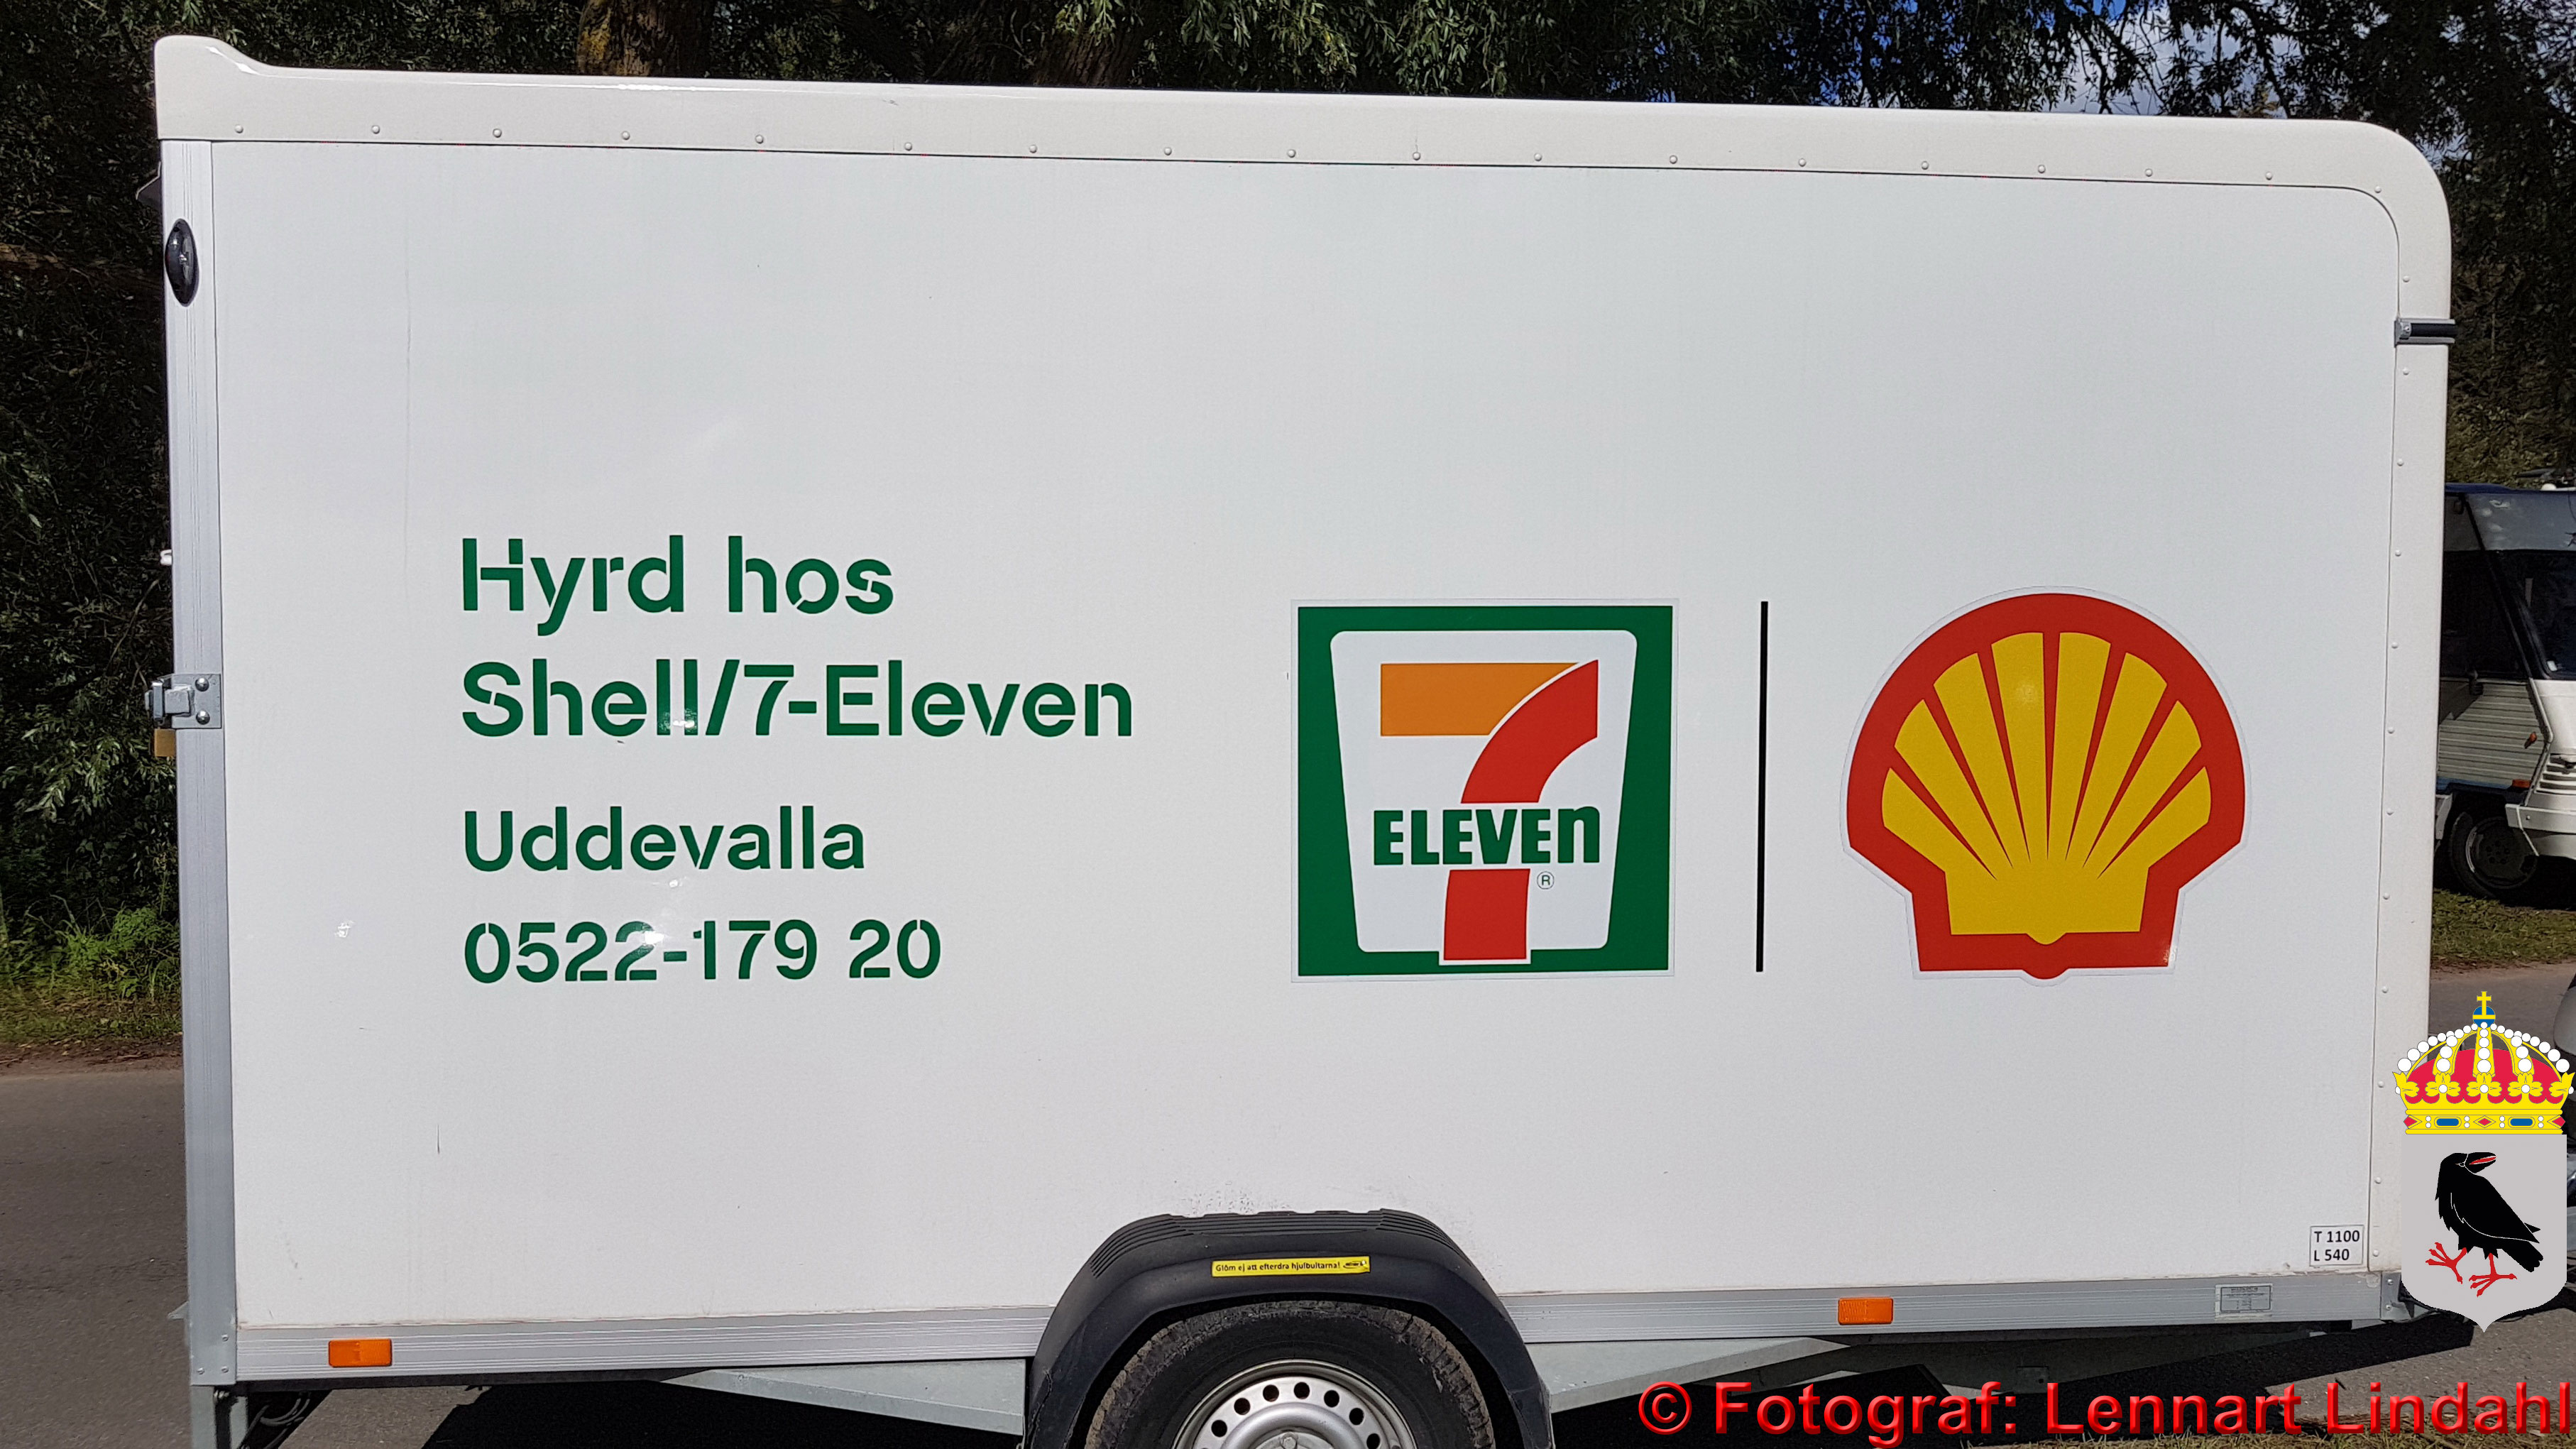 Sponsor Shell 7 Eleven